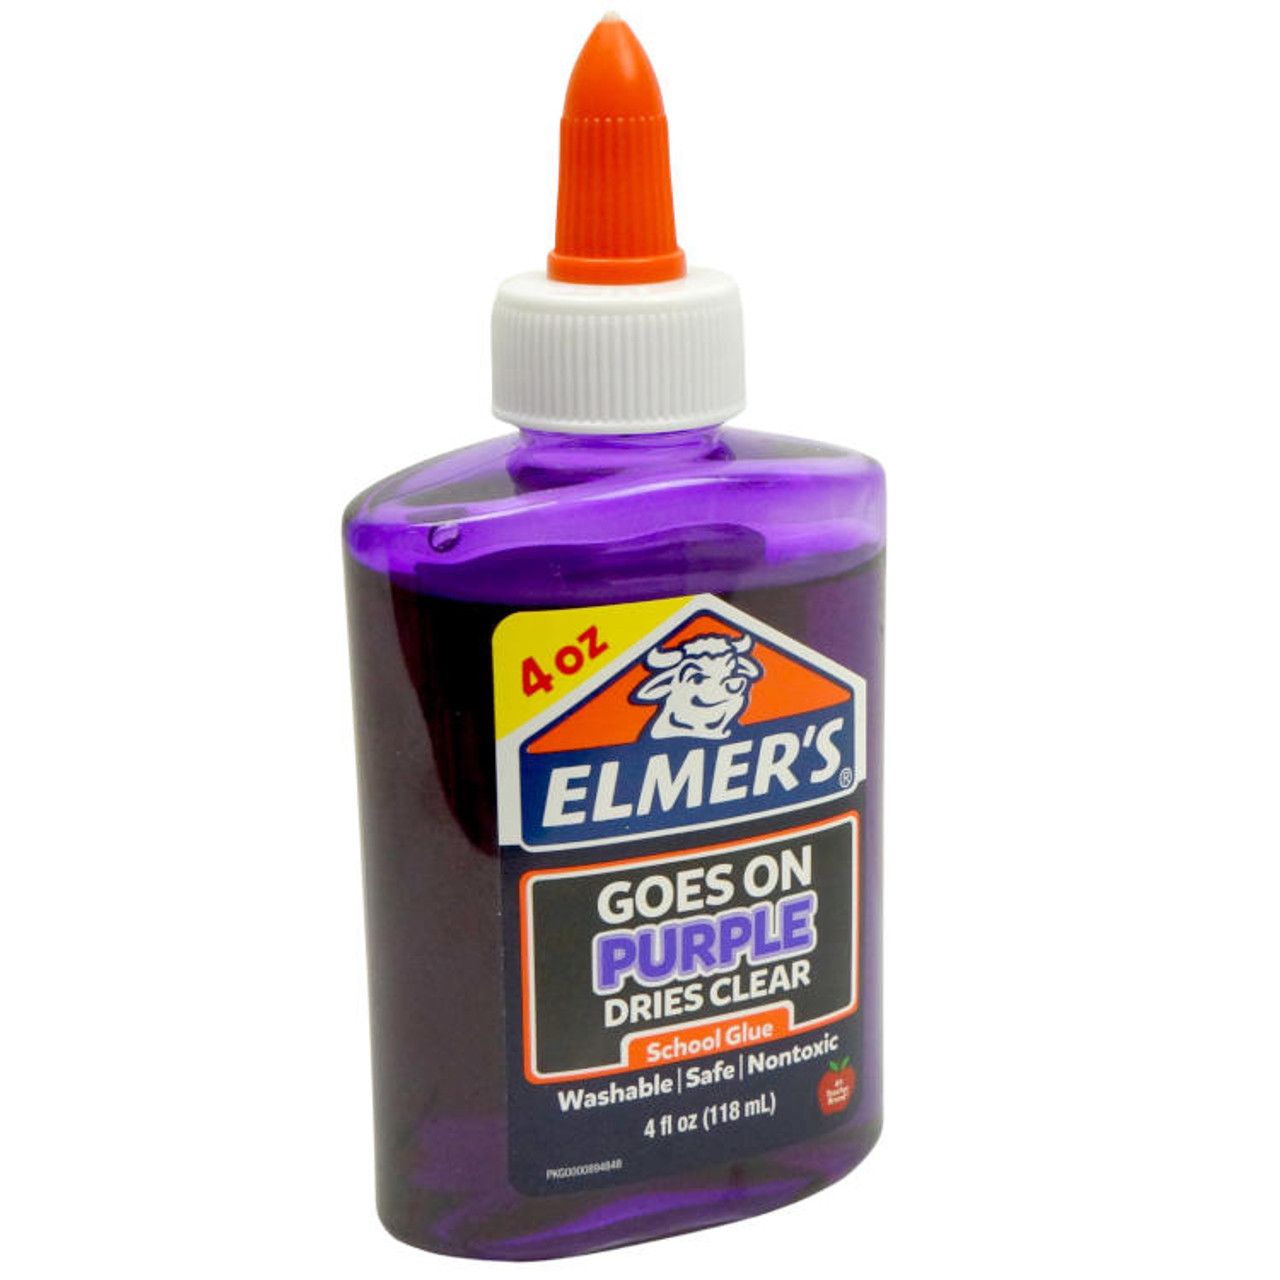 Elmer's Slime Kit 4/Pkg